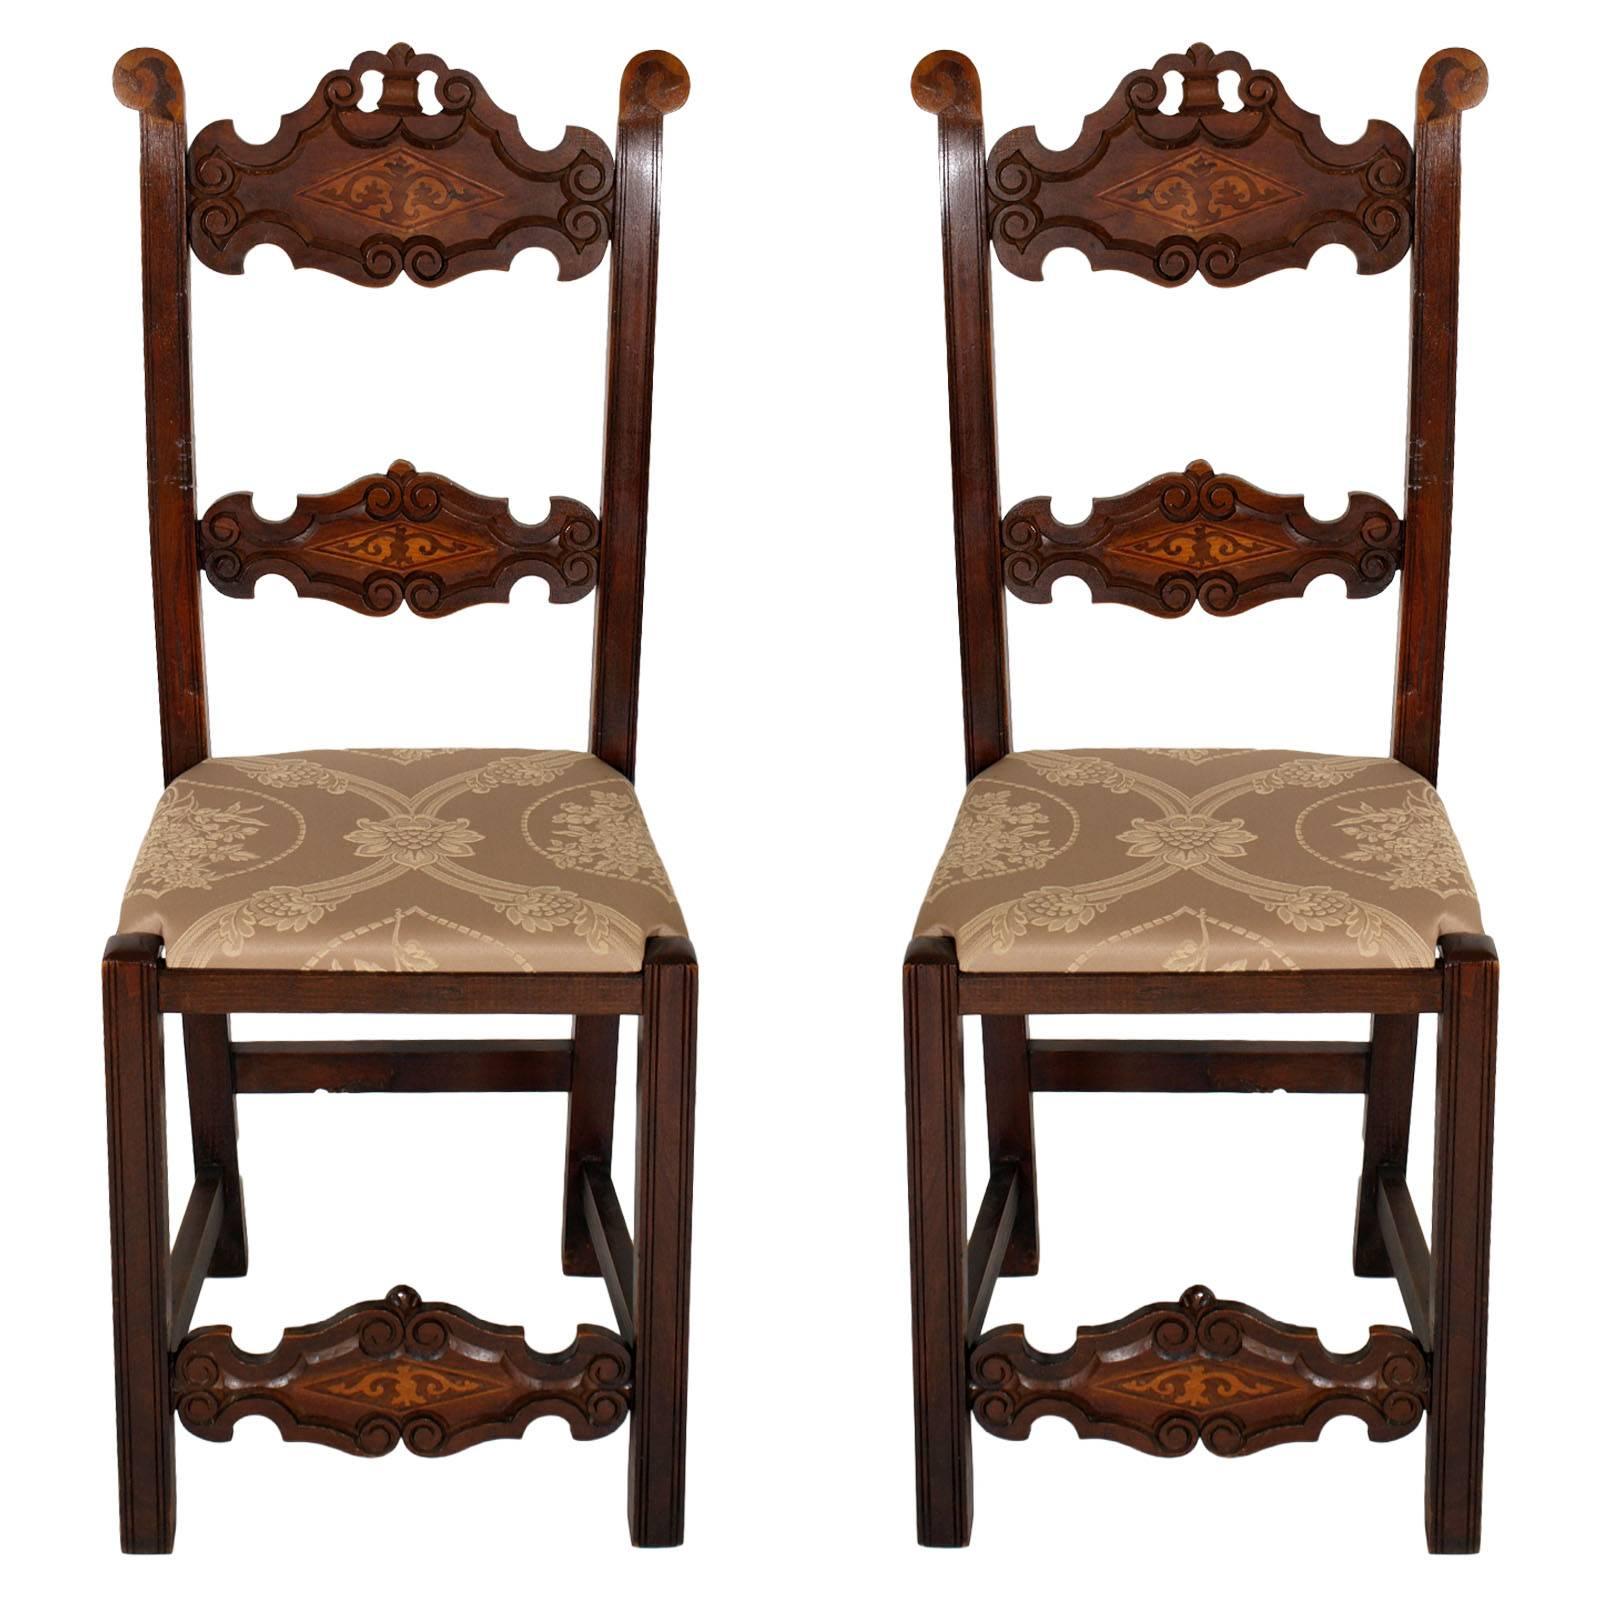 Paire de chaises de style gothique vénitien de la fin des années 1800 en parties incrustées de noyer sculpté